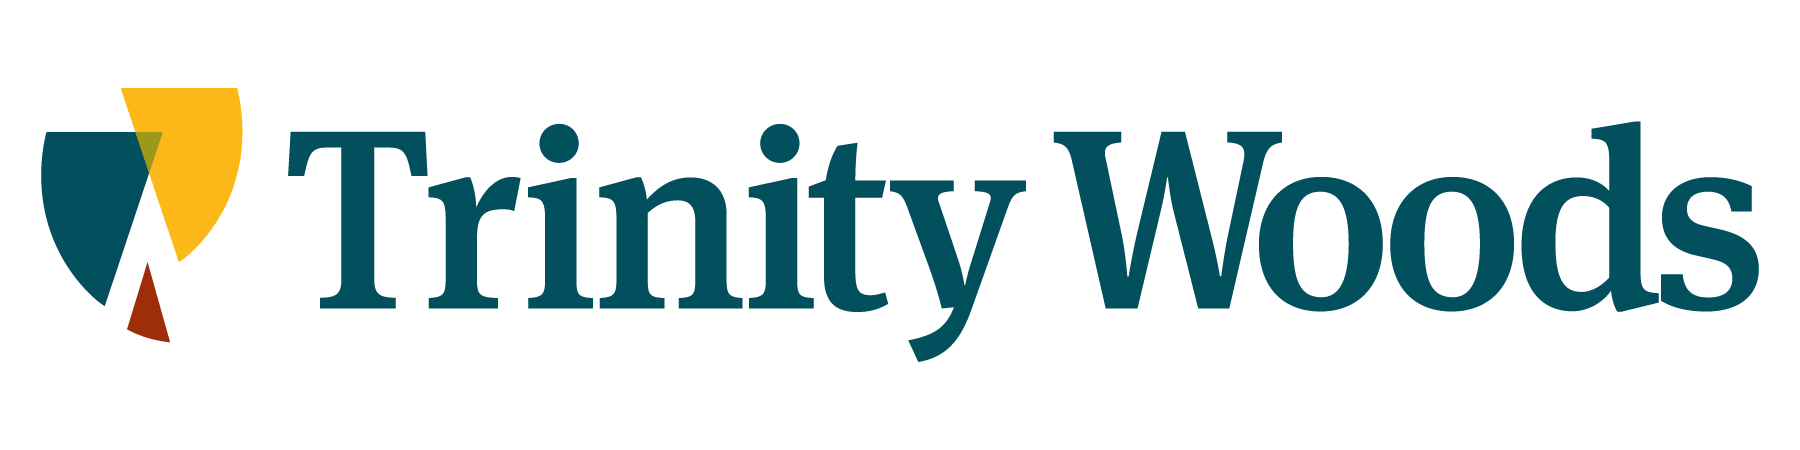 Trinity Woods logo